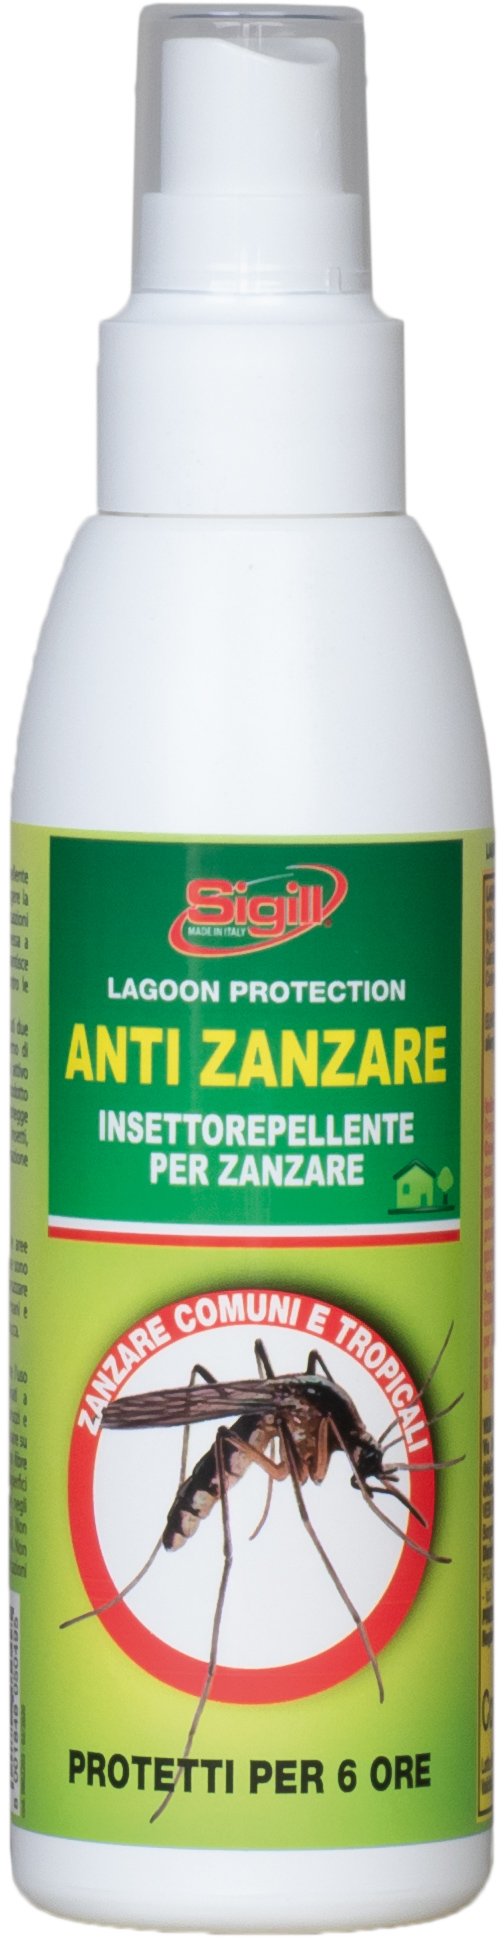 Anti Zanzare